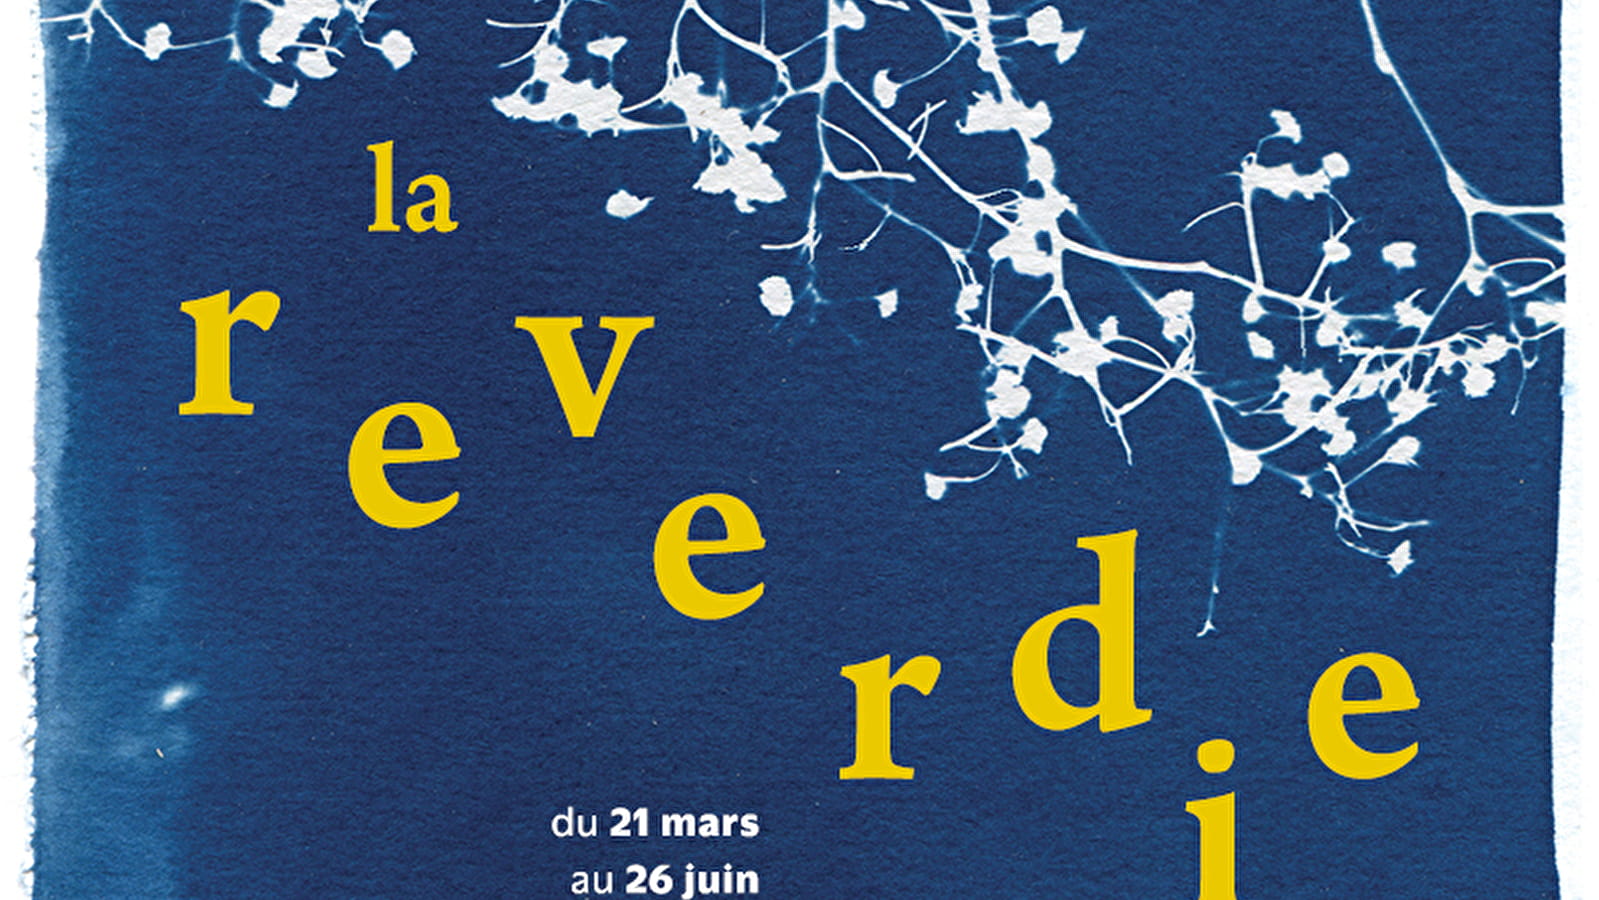 Festival La Reverdie - Ballades en balade with Obsidienne